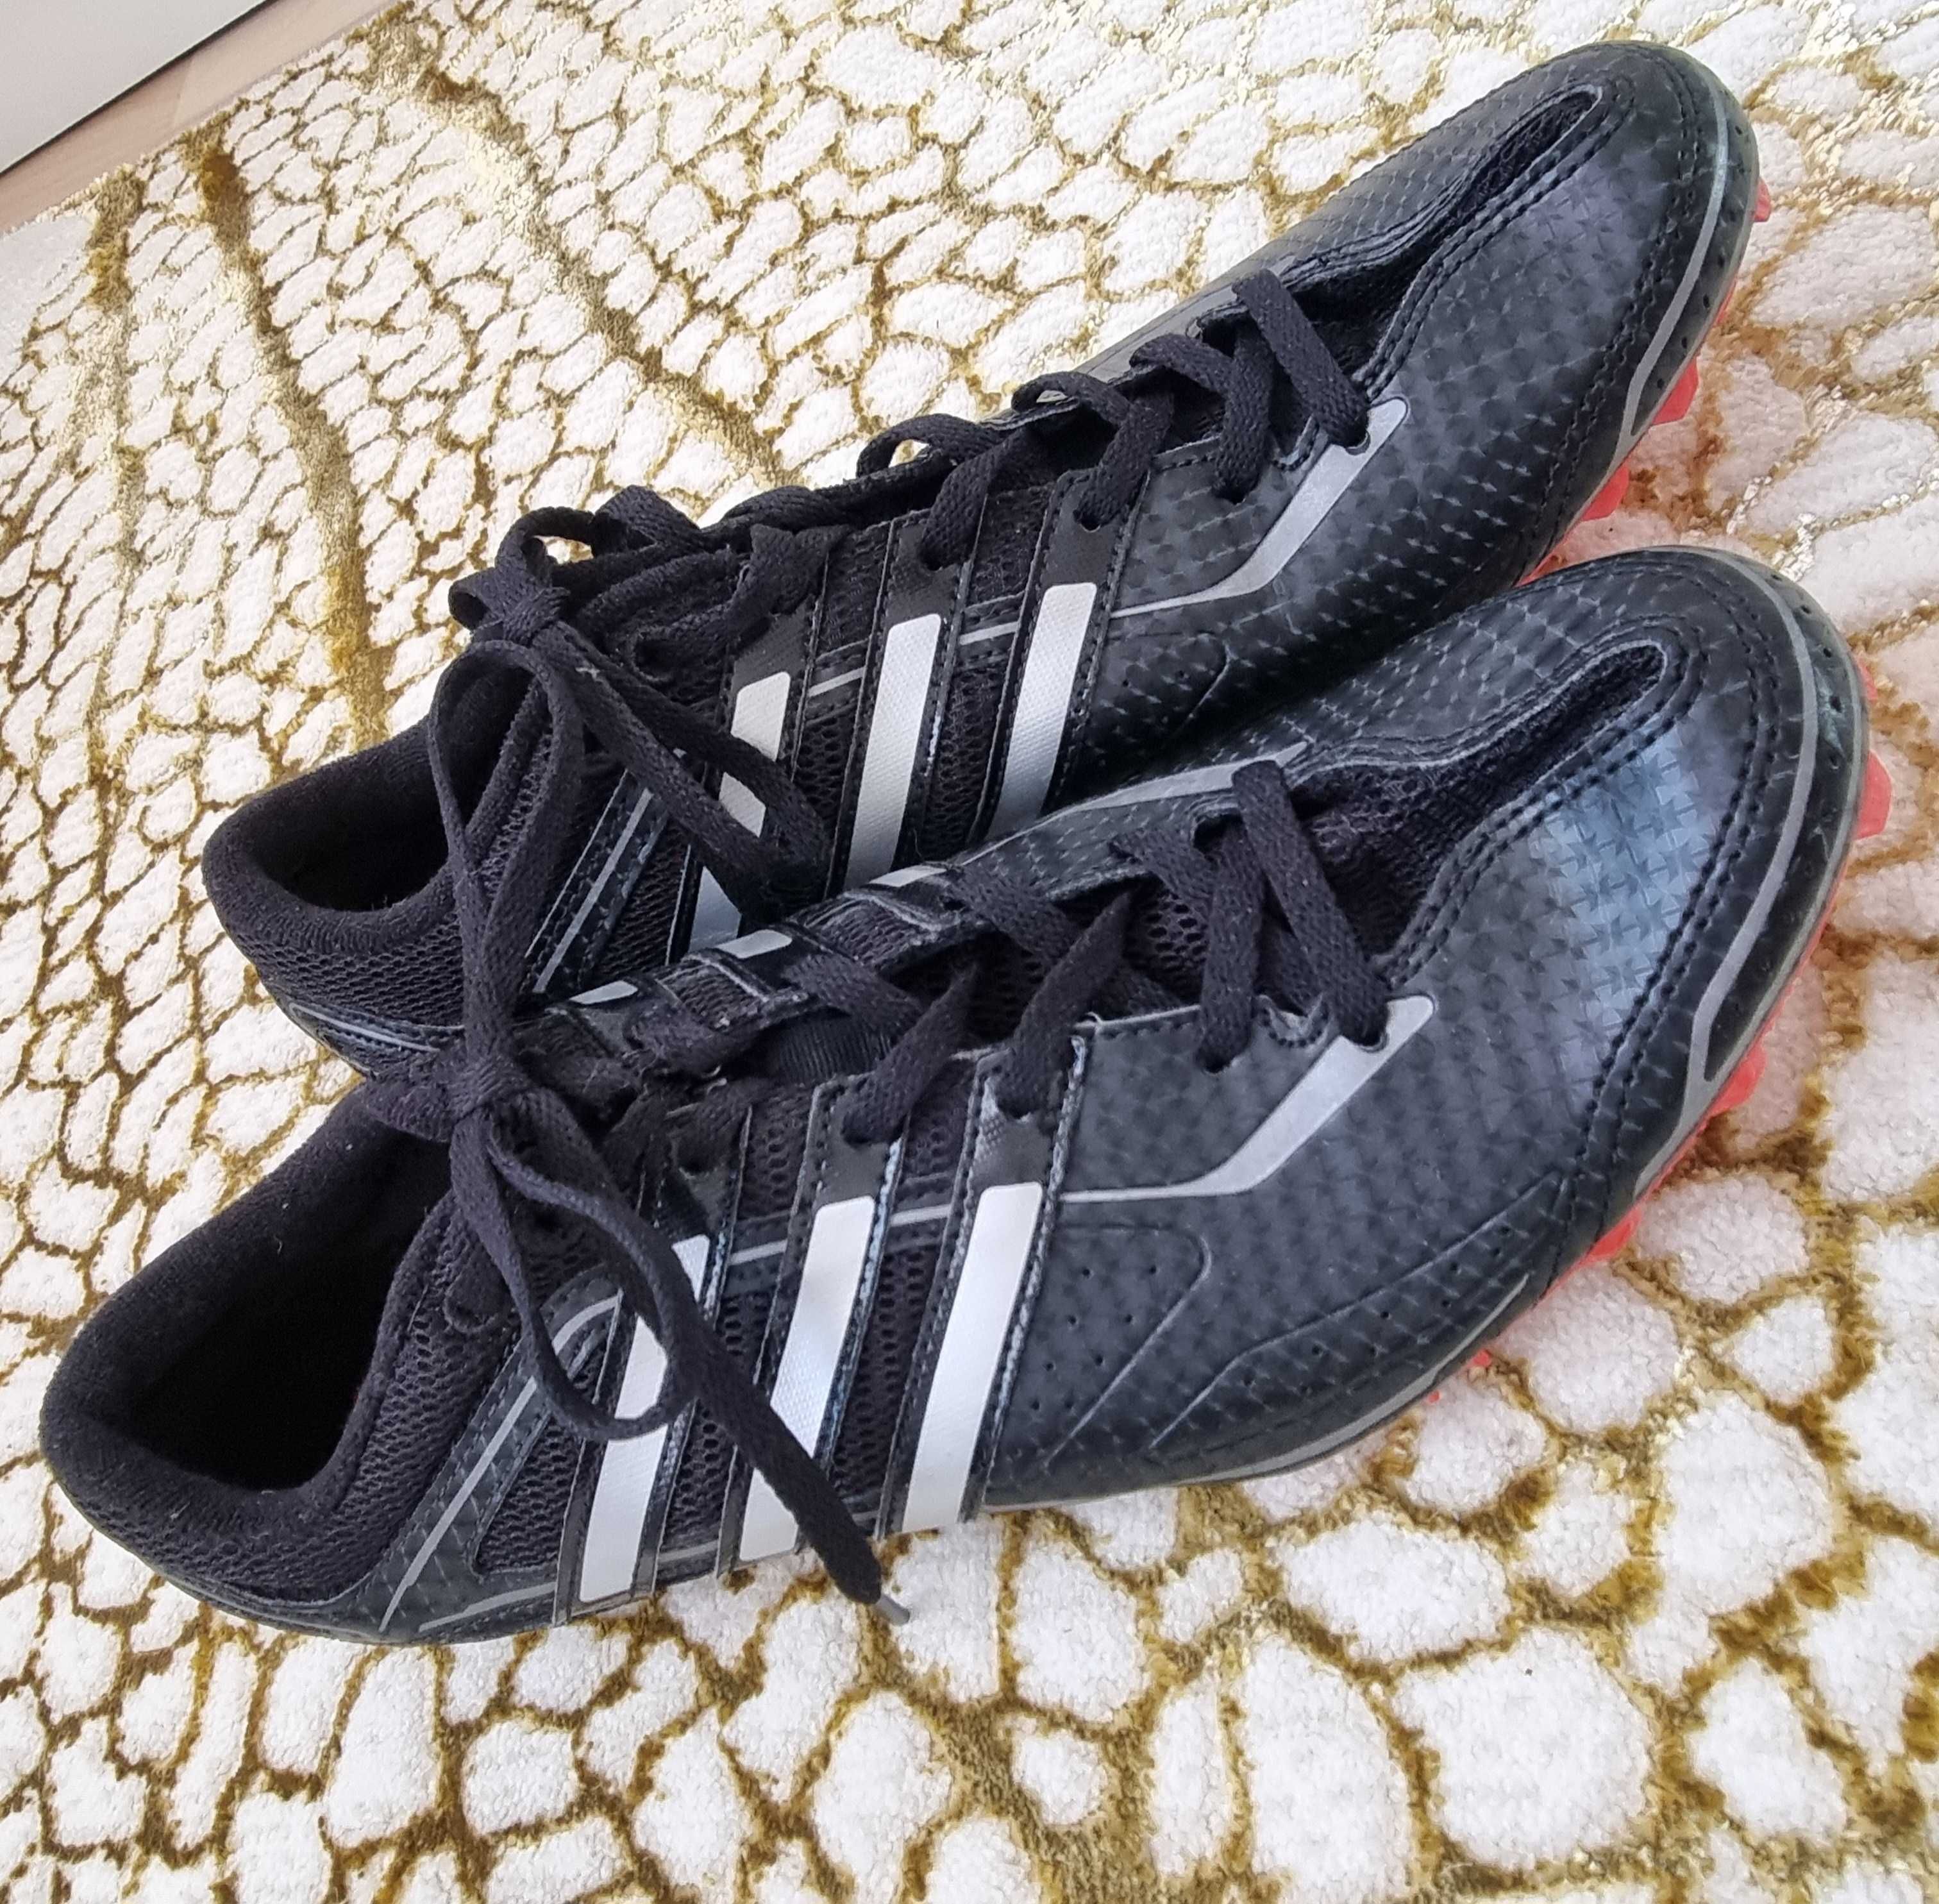 Kolce męskie sprinterskie biegowe buty sportowe ADIDAS rozmiar 43,5